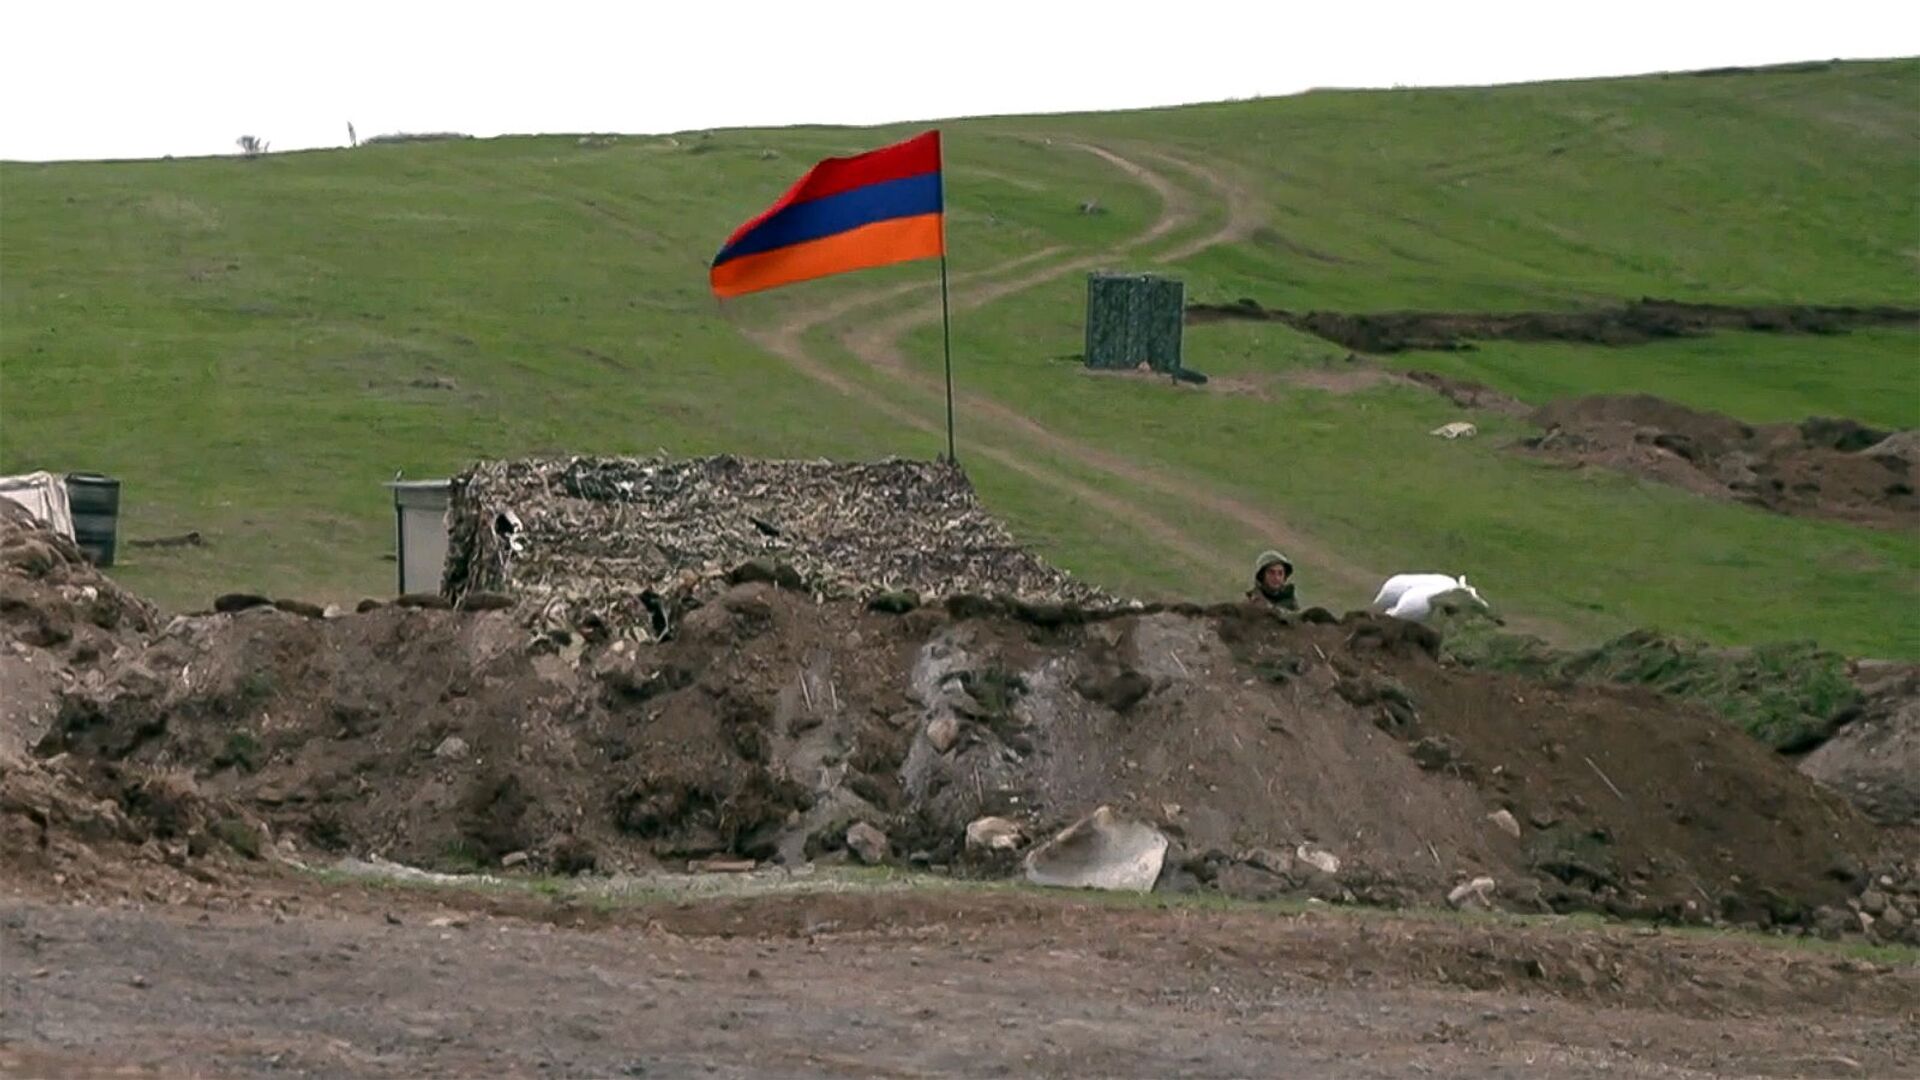 Армянский военнослужащий на армяно-азербайджанской границе - Sputnik Армения, 1920, 07.05.2021